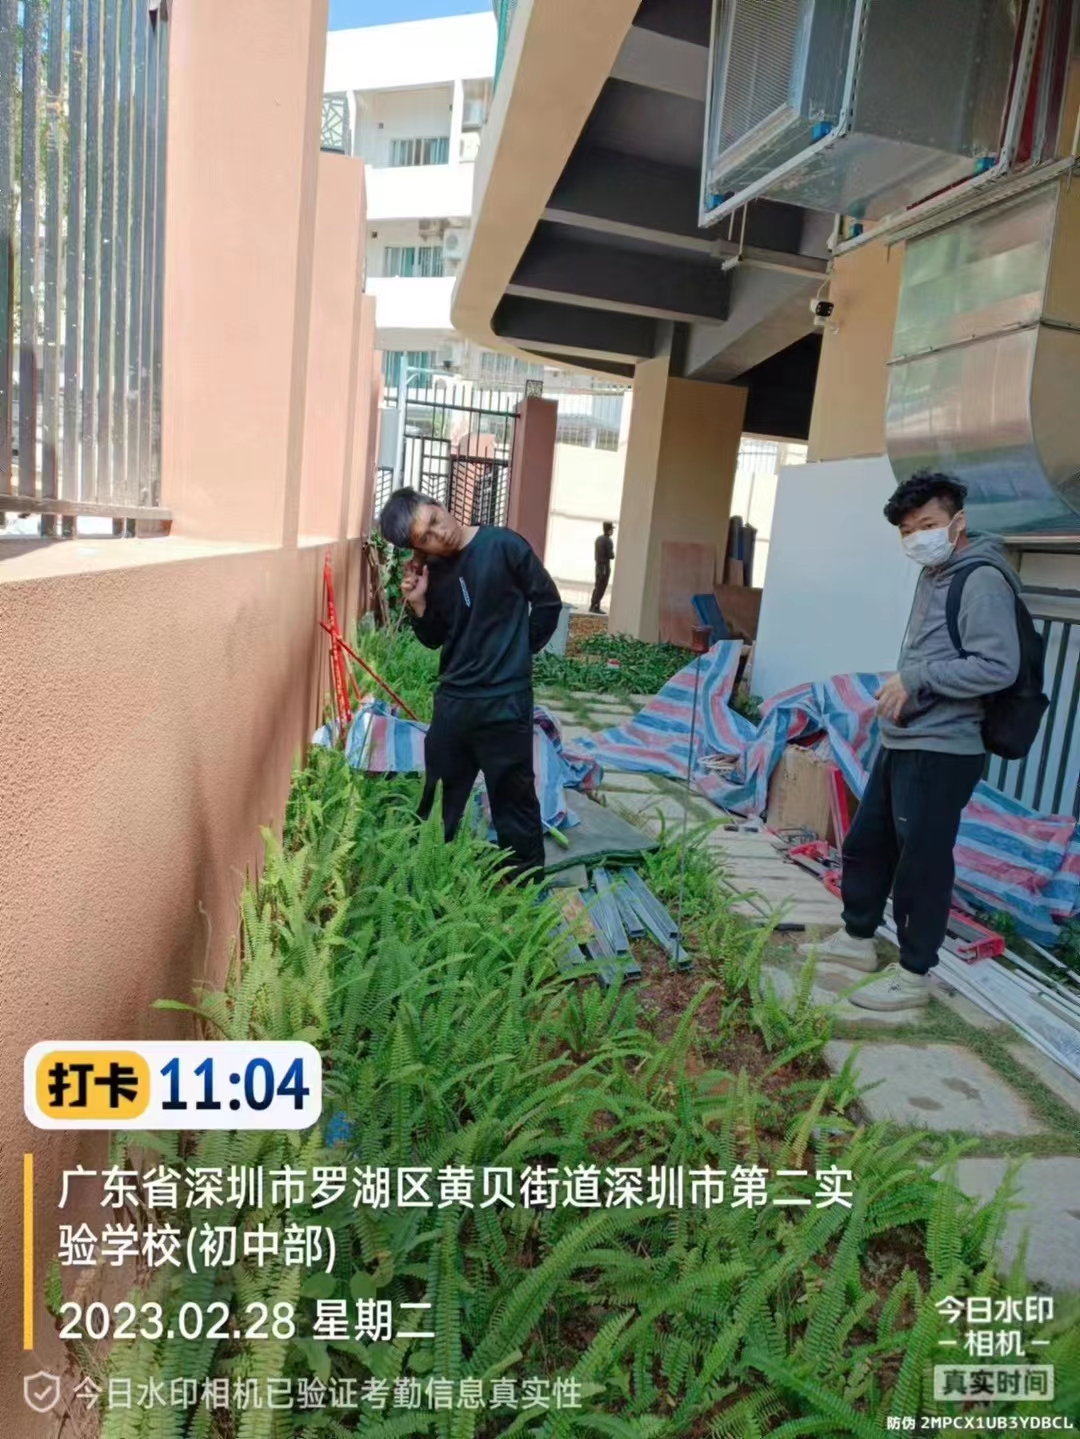 漏水检测工程在广东深圳罗湖区黄贝街道第二实验学校进行